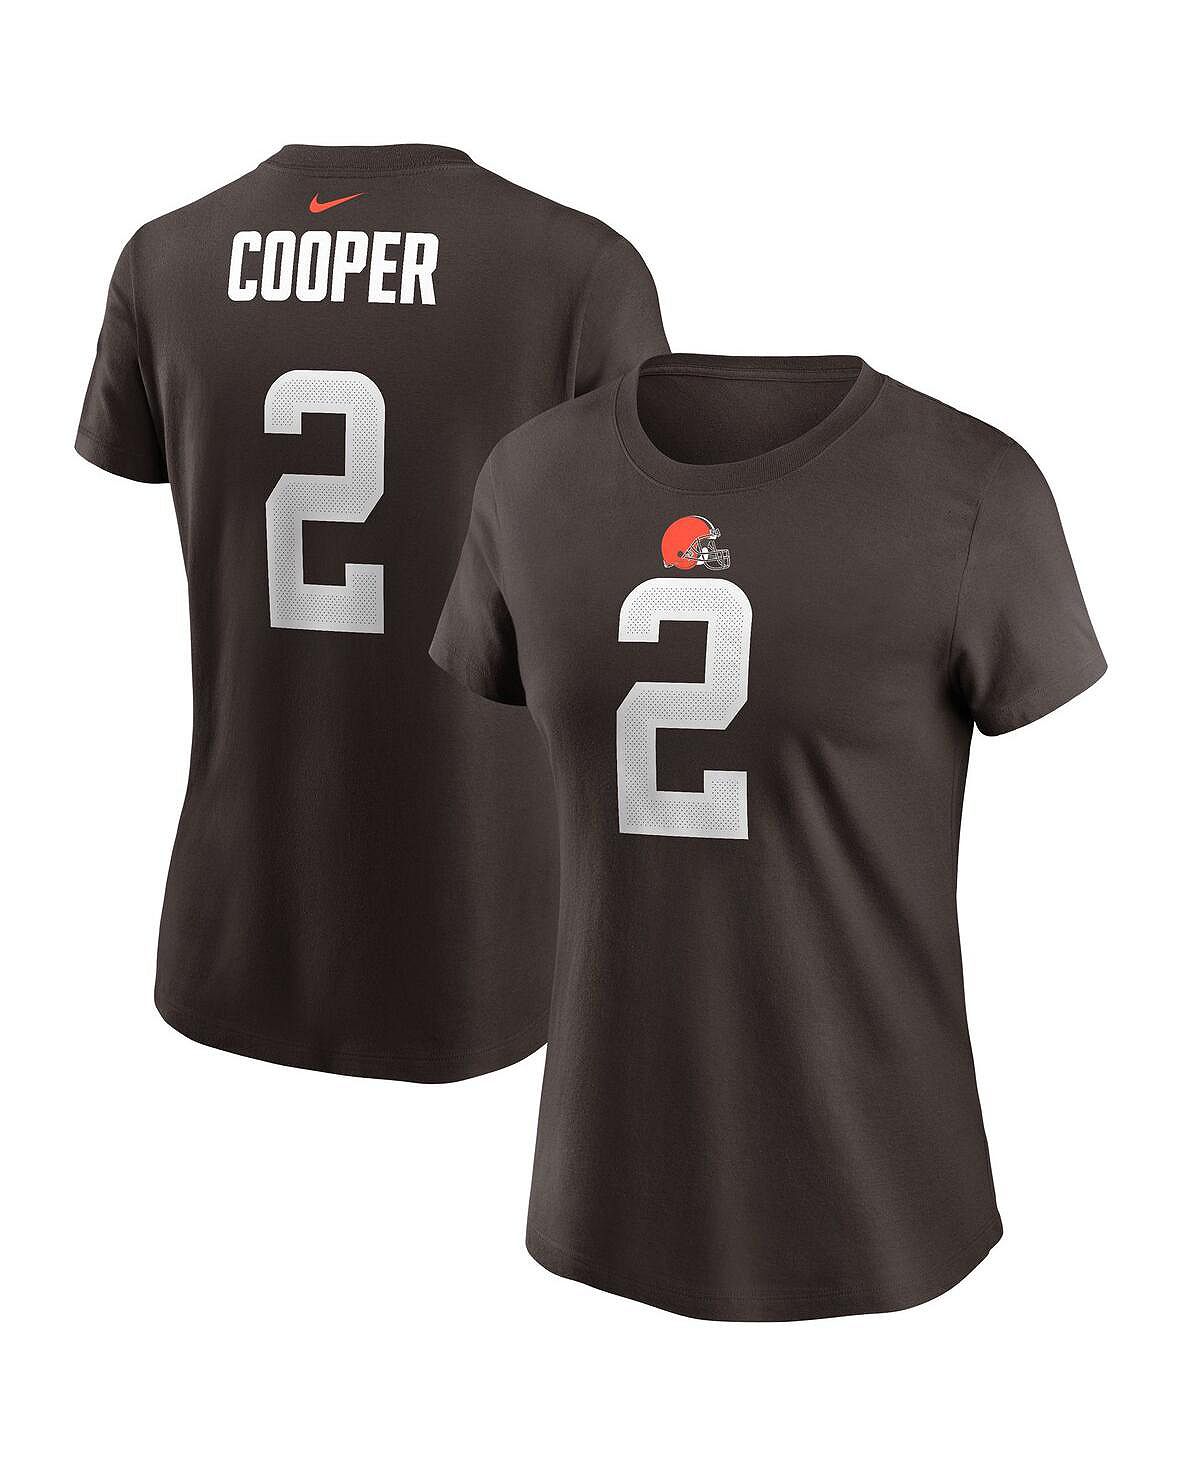 Женская футболка amari cooper brown cleveland browns с именем и номером игрока Nike, коричневый